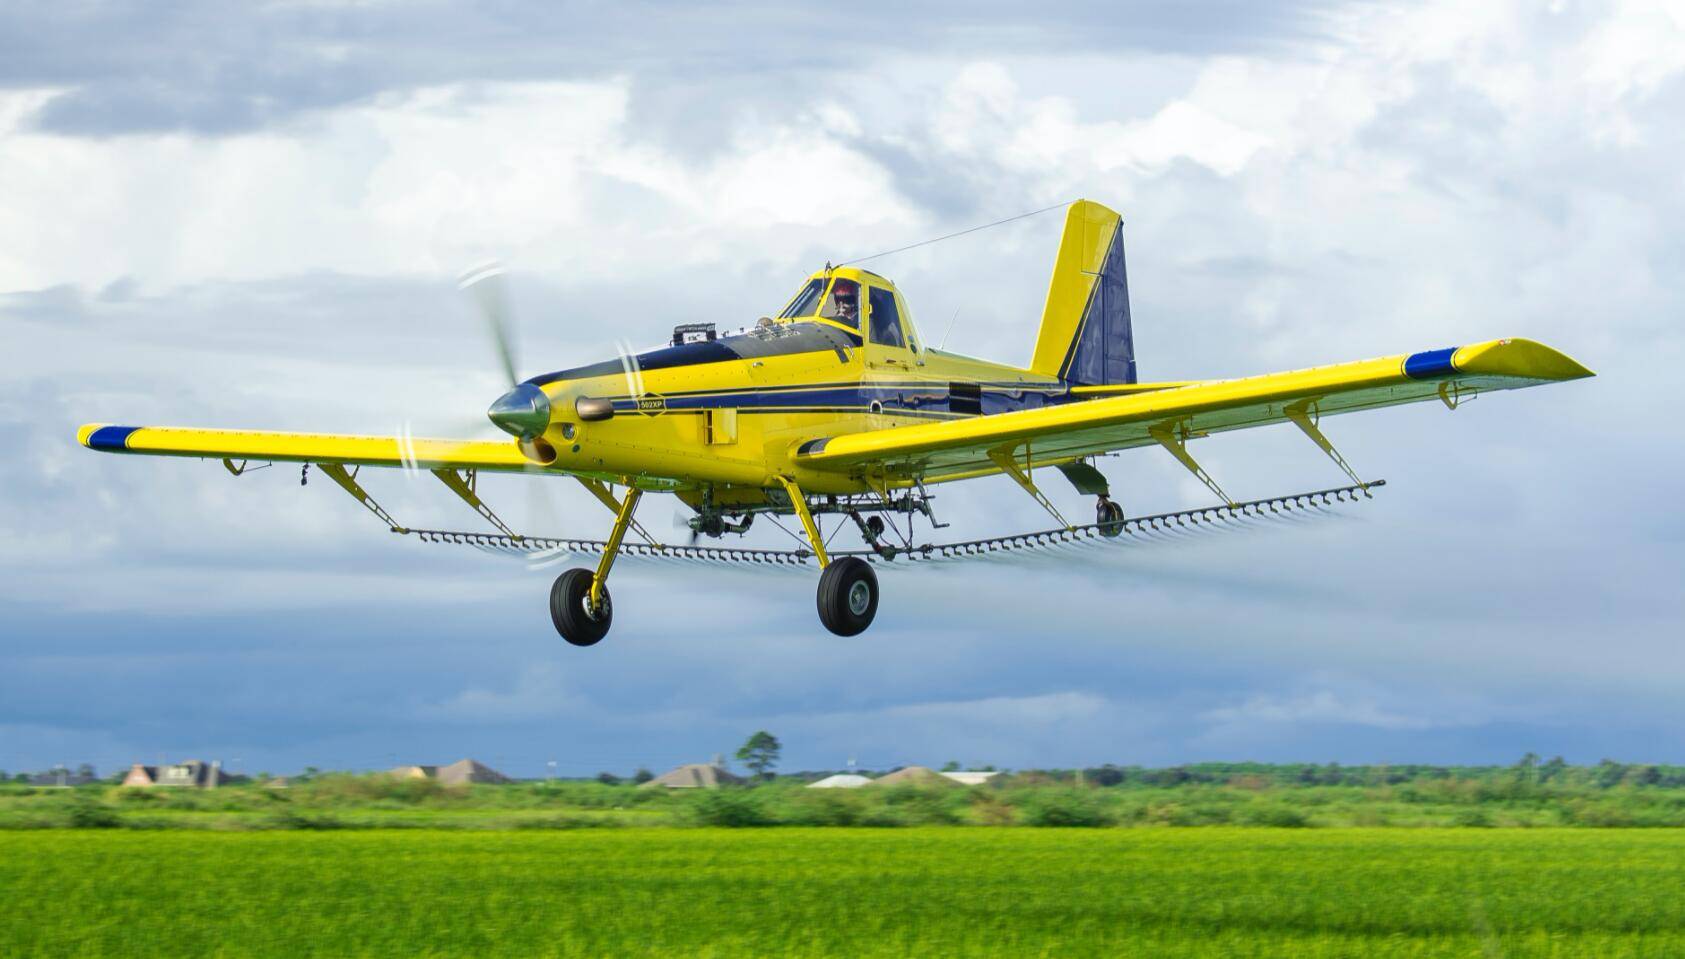 它是美国空中拖拉机飞机公司生产的,一款专门用于农业的固定翼私人